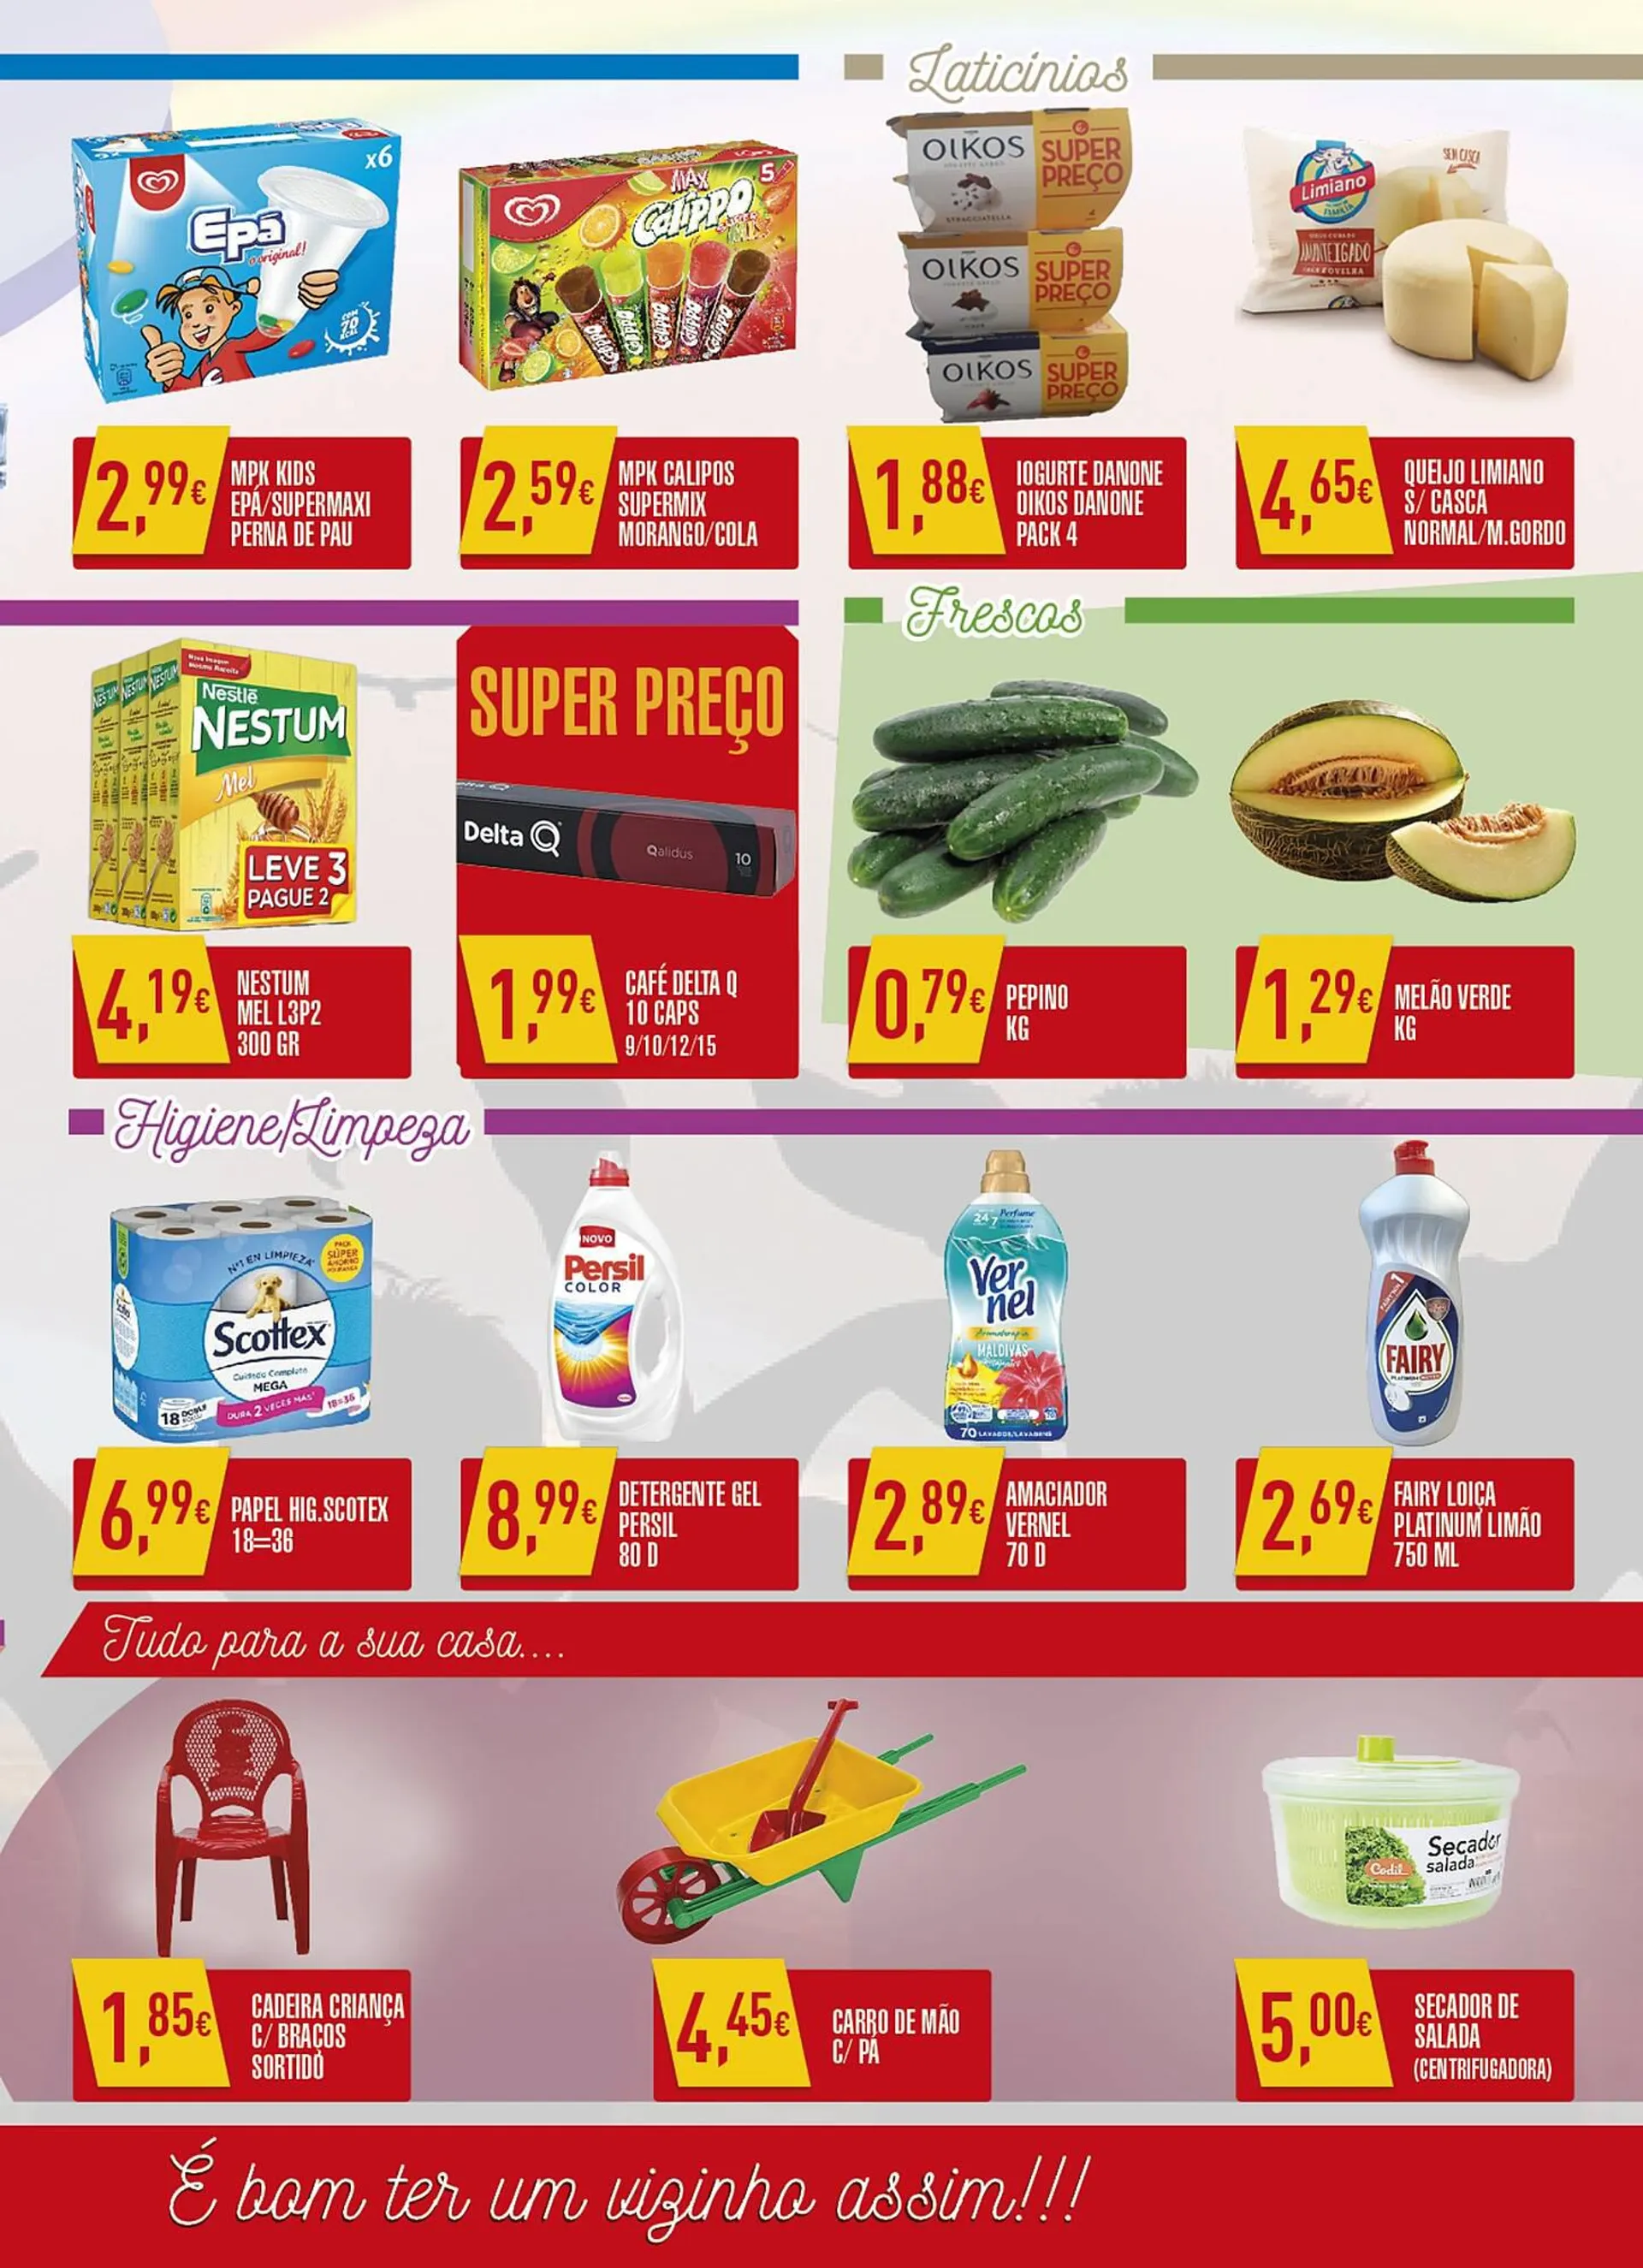 Folheto Miranda Supermercados - 3